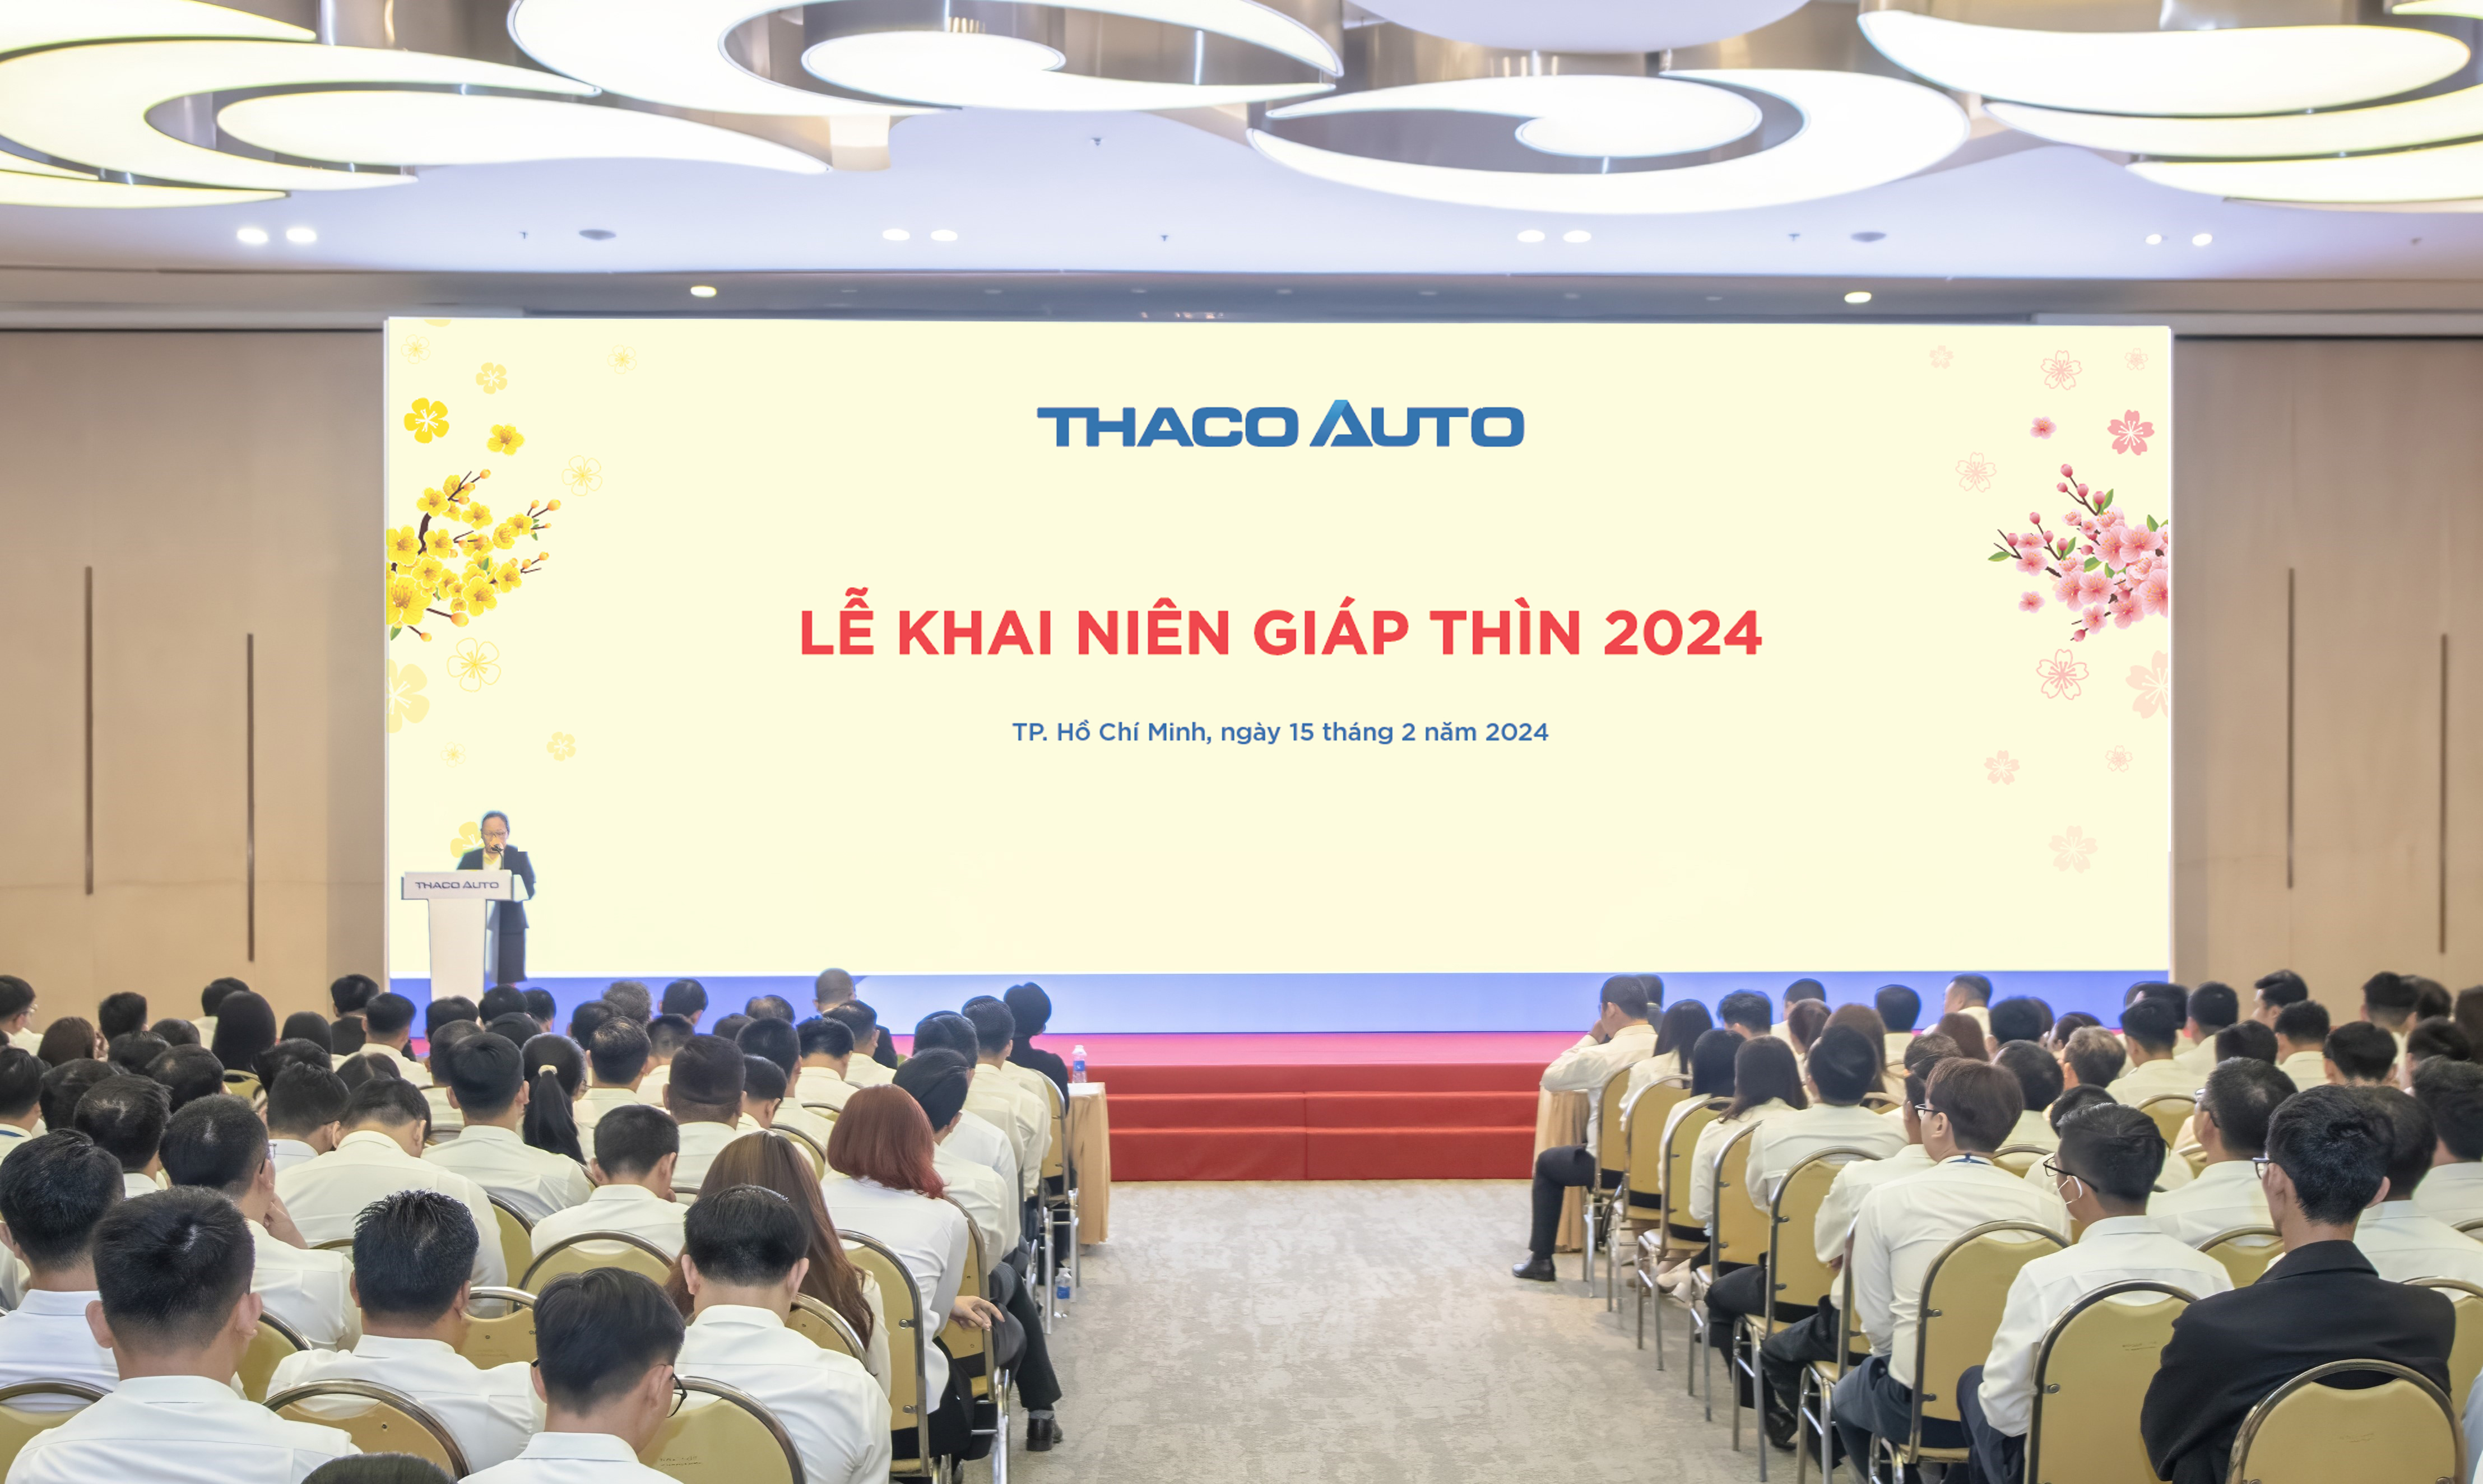 THACO AUTO tổ chức Lễ Khai niên Giáp Thìn 2024